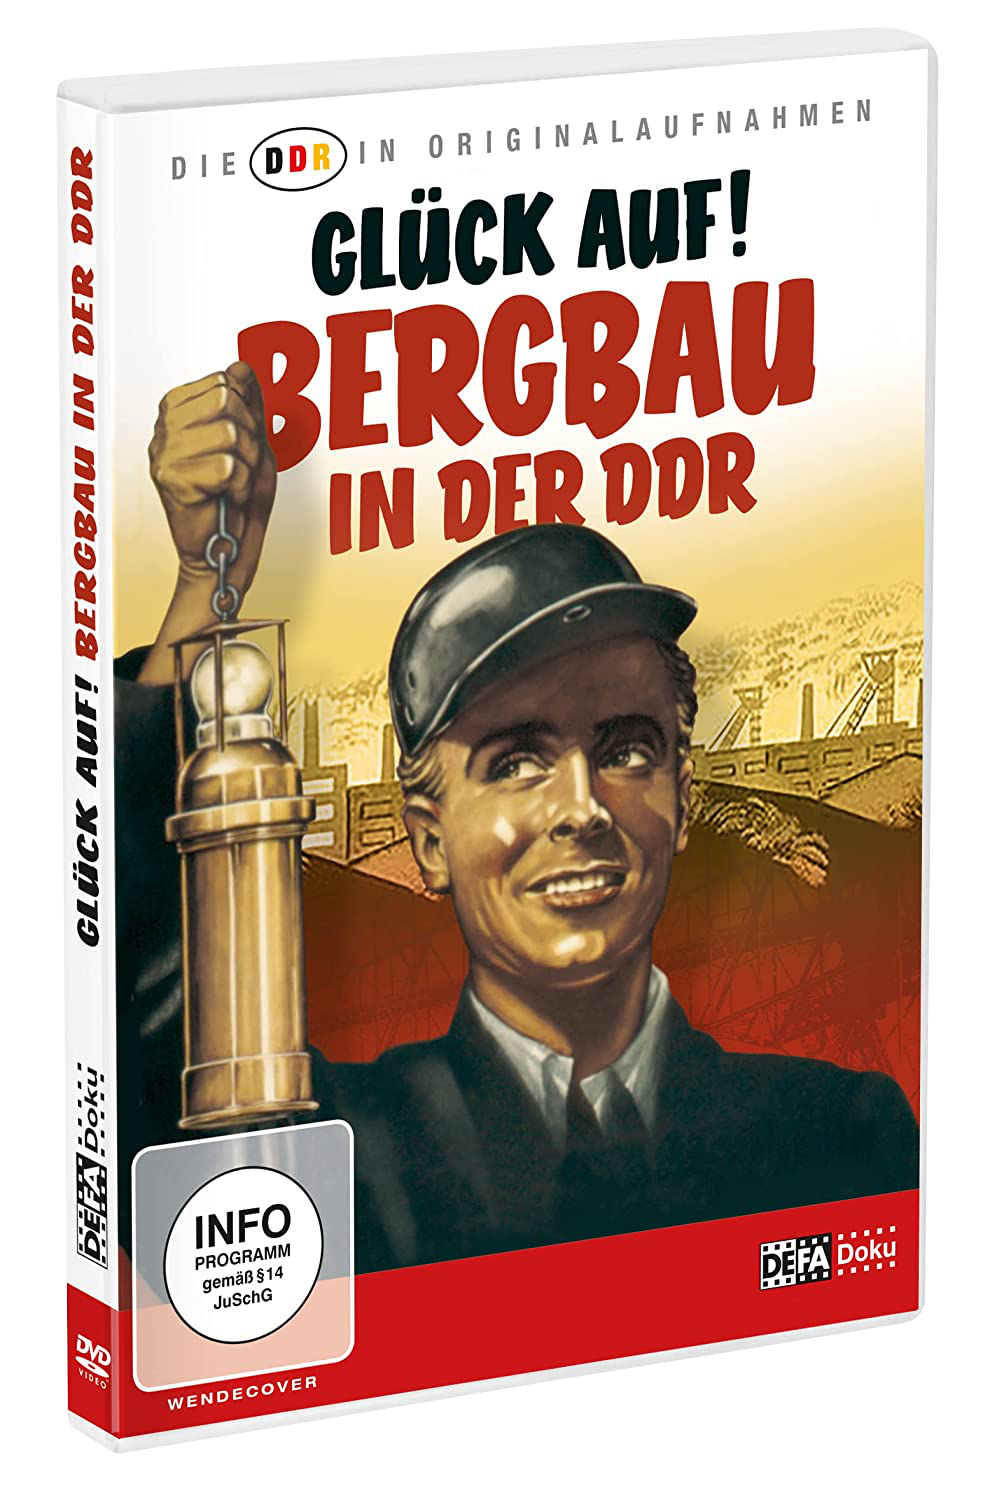 Die DDR in Originalaufnahmen - Glück auf! Bergbau in der DDR